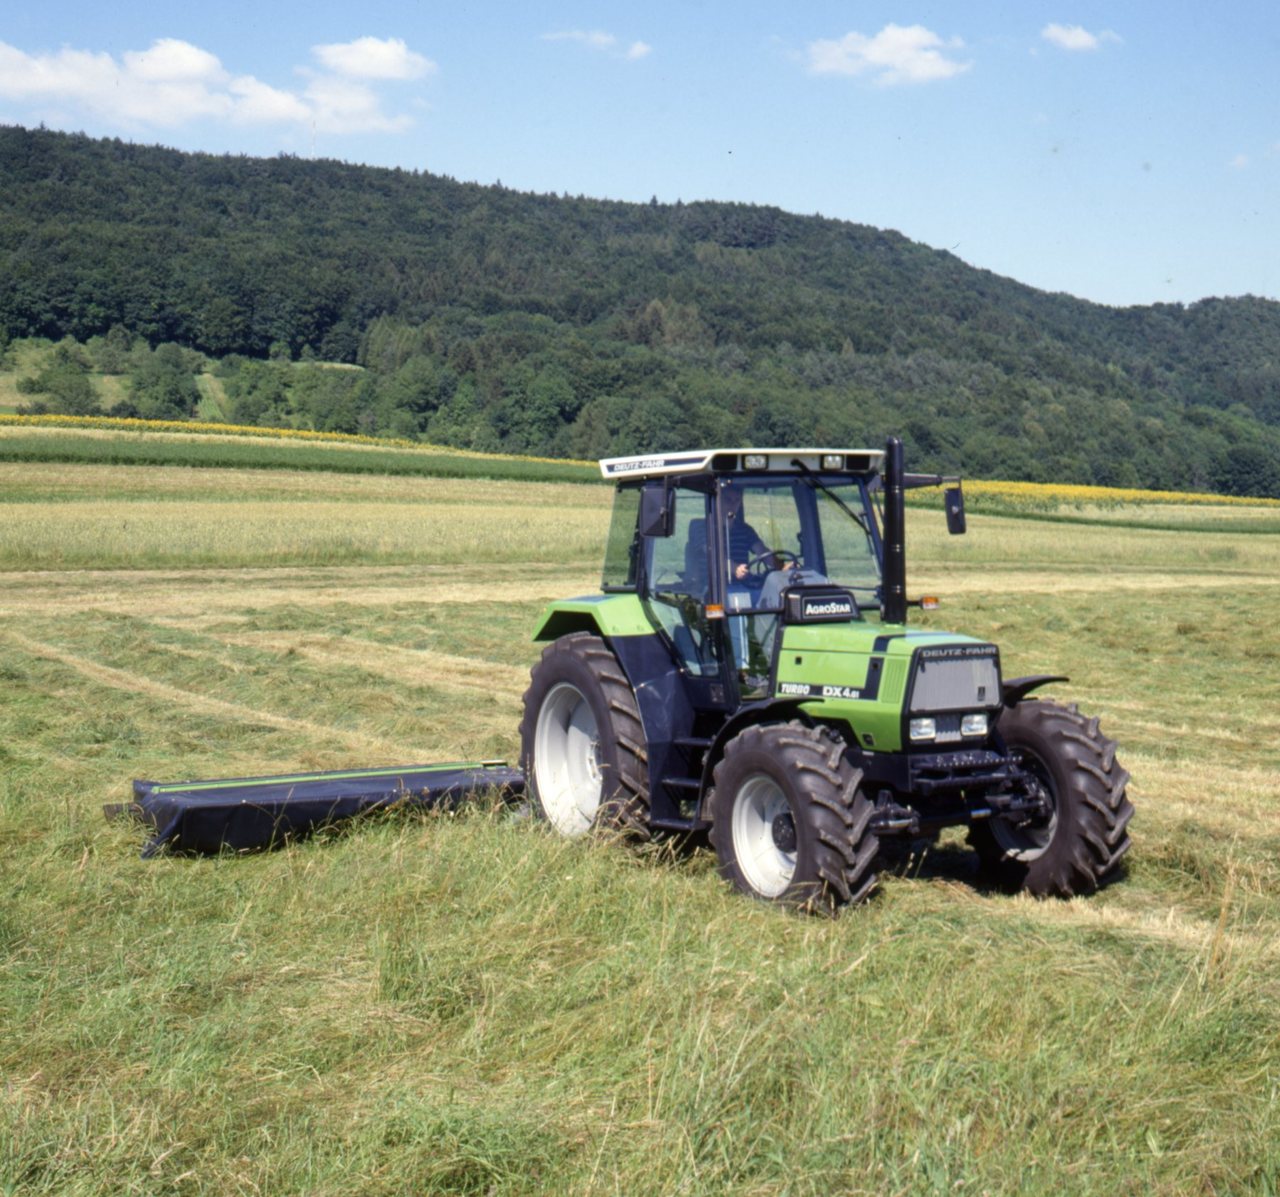 Deutz-Fahr AgroStar 4.61 Traktor mit Mähwerk (Quelle: SDF Archiv)